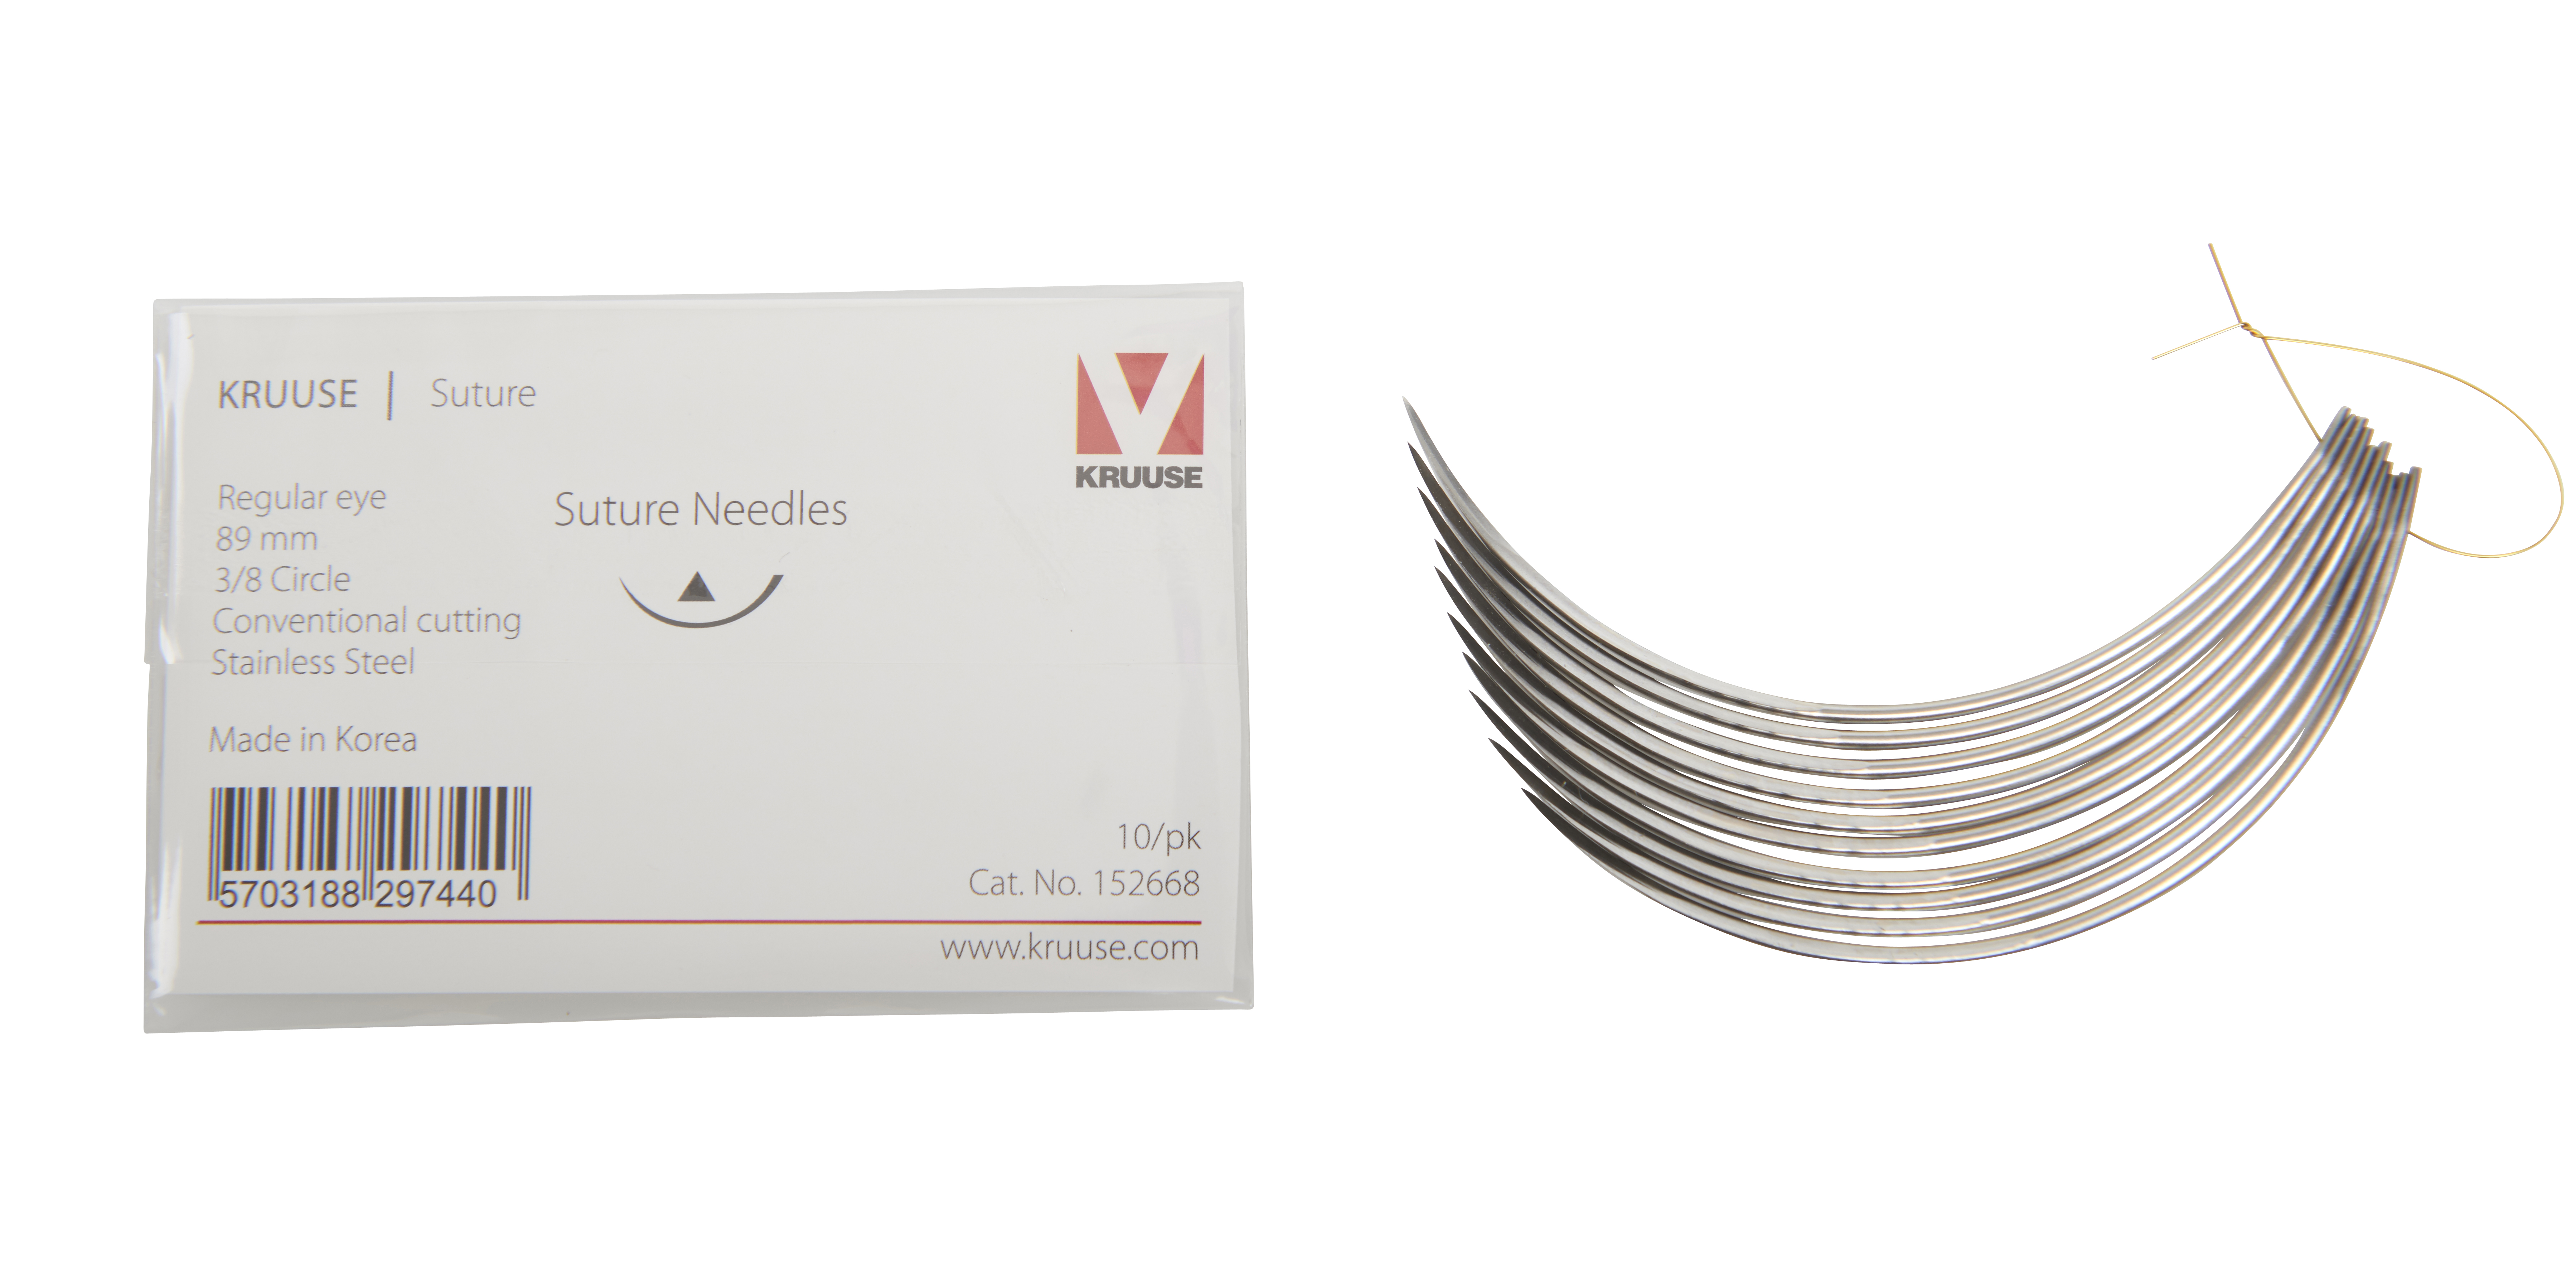 KRUUSE Suture Needle, regular eye, 3/8 circle, conventional cutting, 89 mm, 10/pk